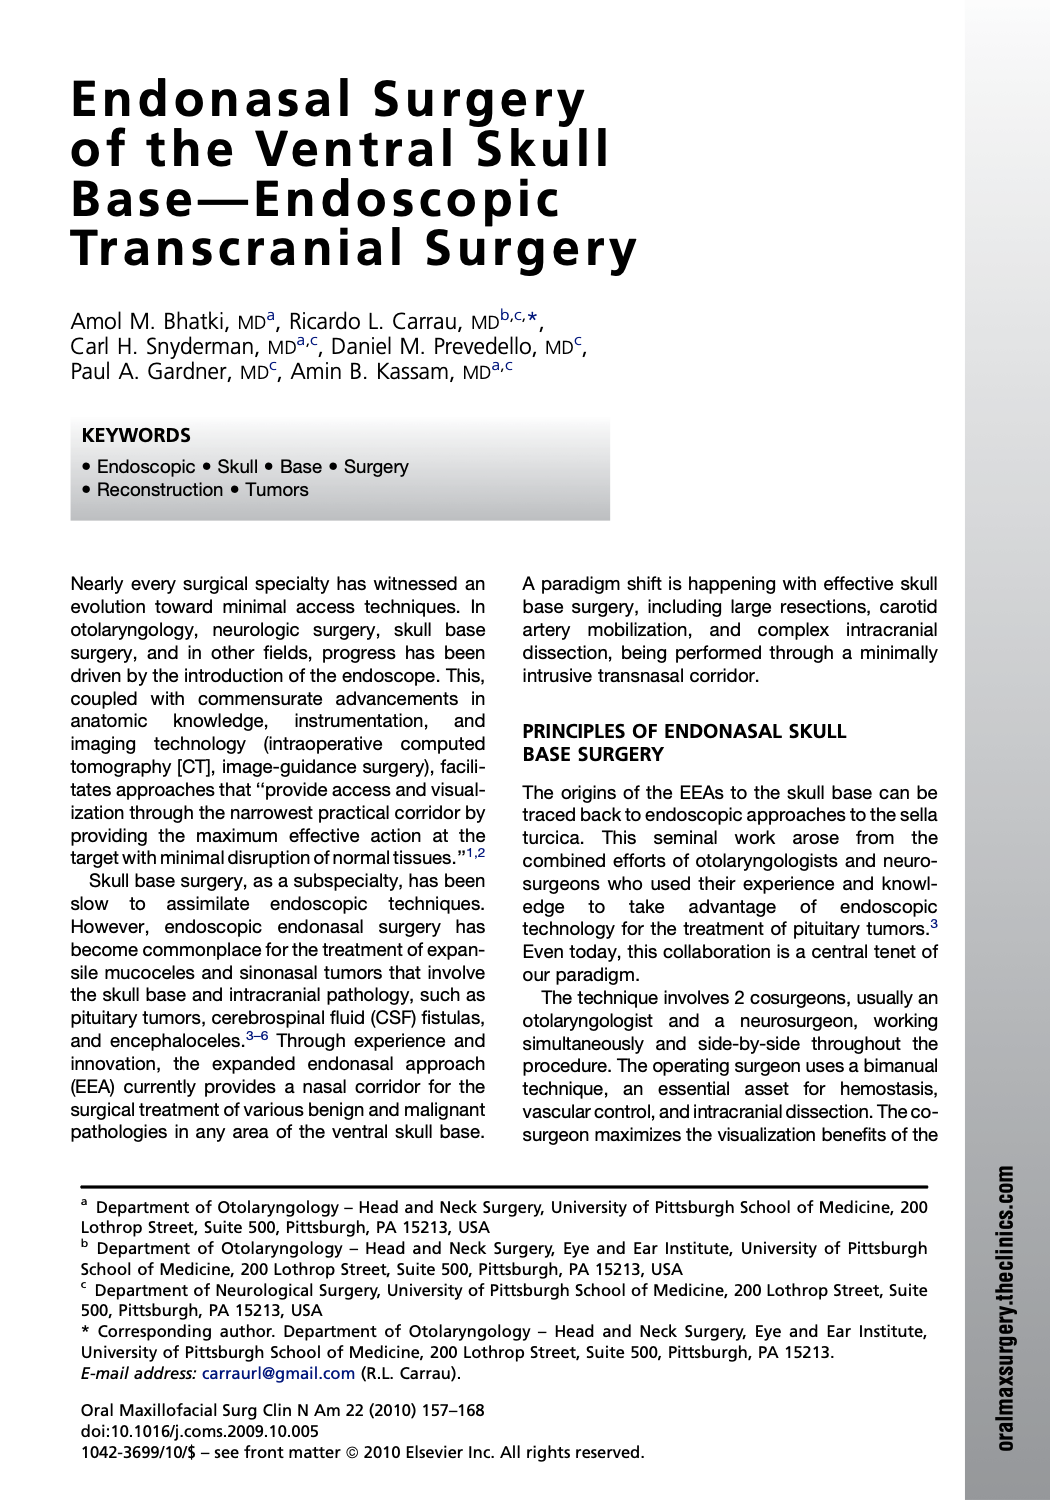 Endonasal Surgery of the Ventral Skull Base—Endoscopic Transcranial Surgery